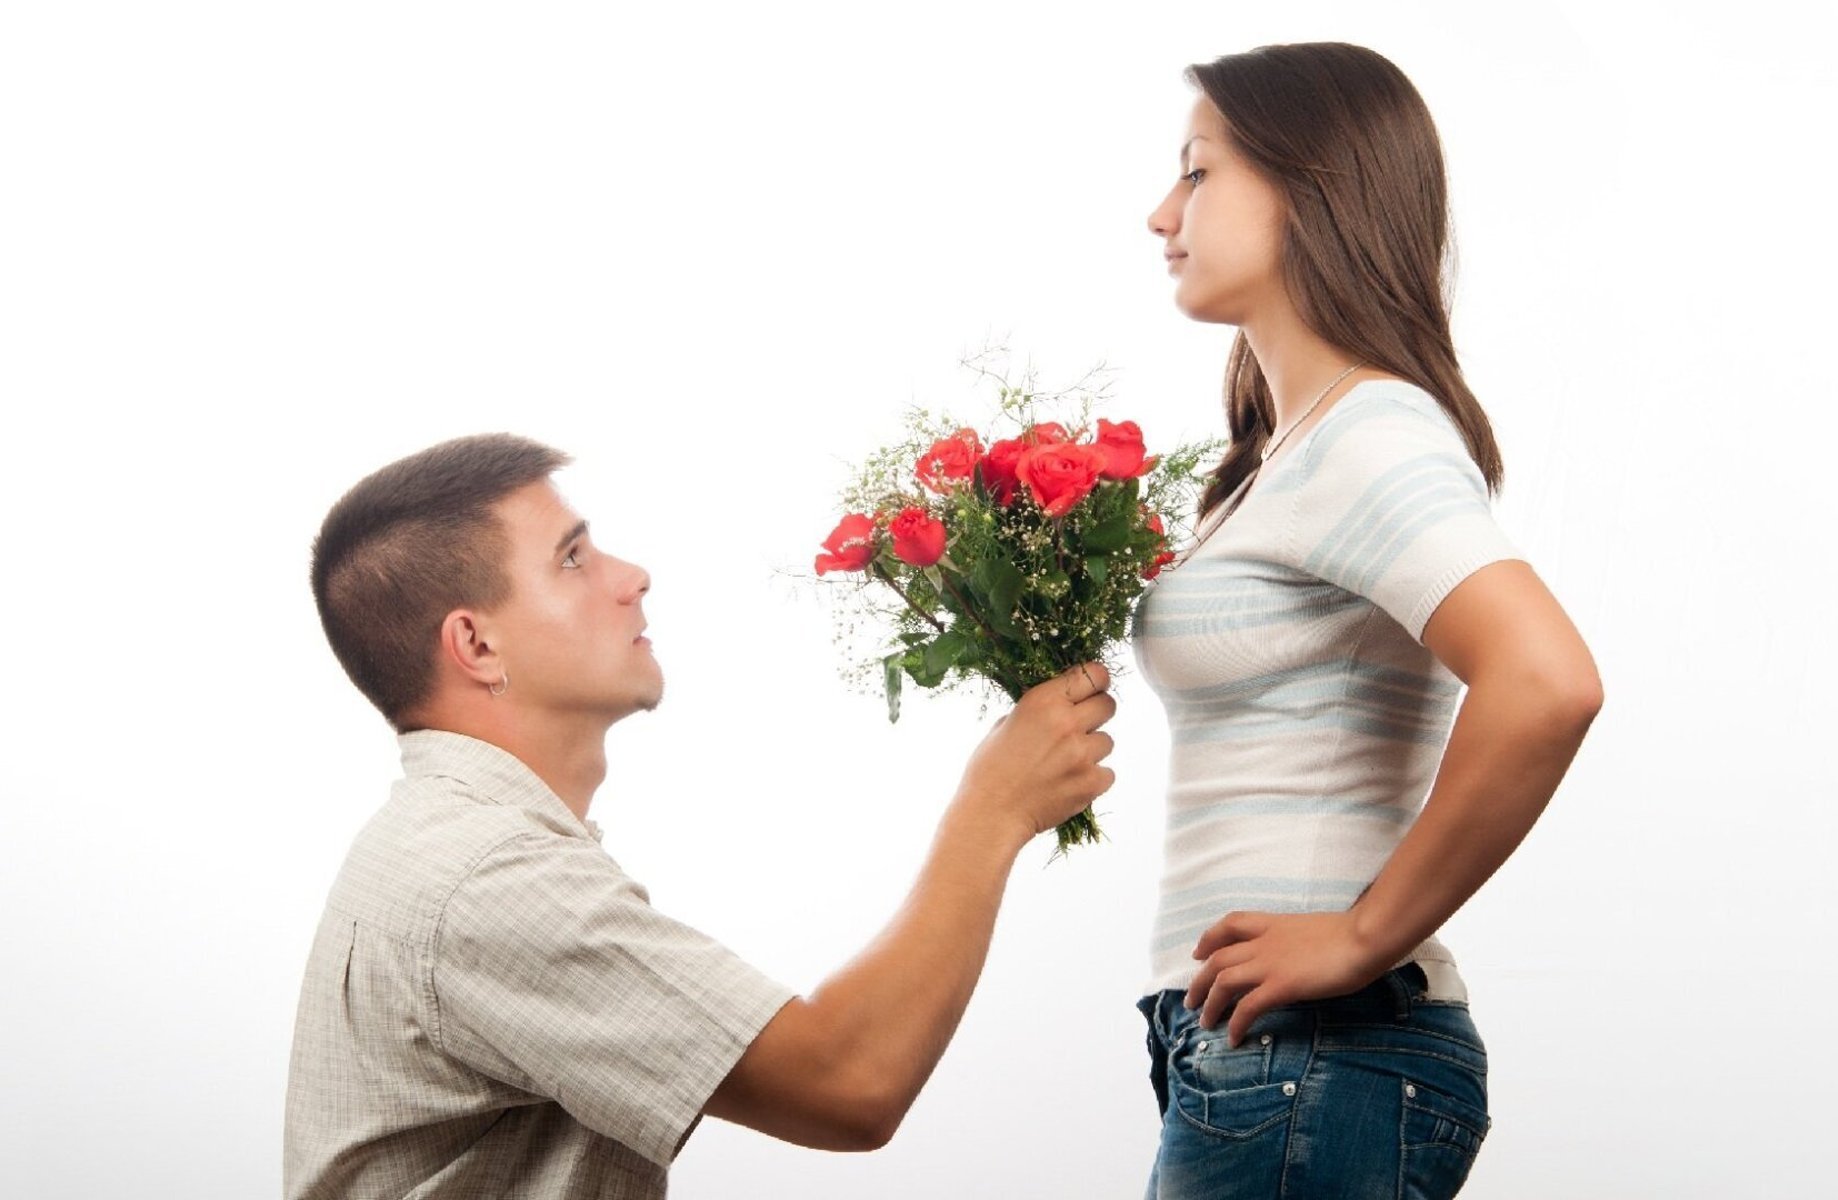 Симпатия простыми словами. Парень даритдеаушке цветы. Парень дарит девушке цветы. Девушке дарят цветы. Мужчина дарит цветы женщине.